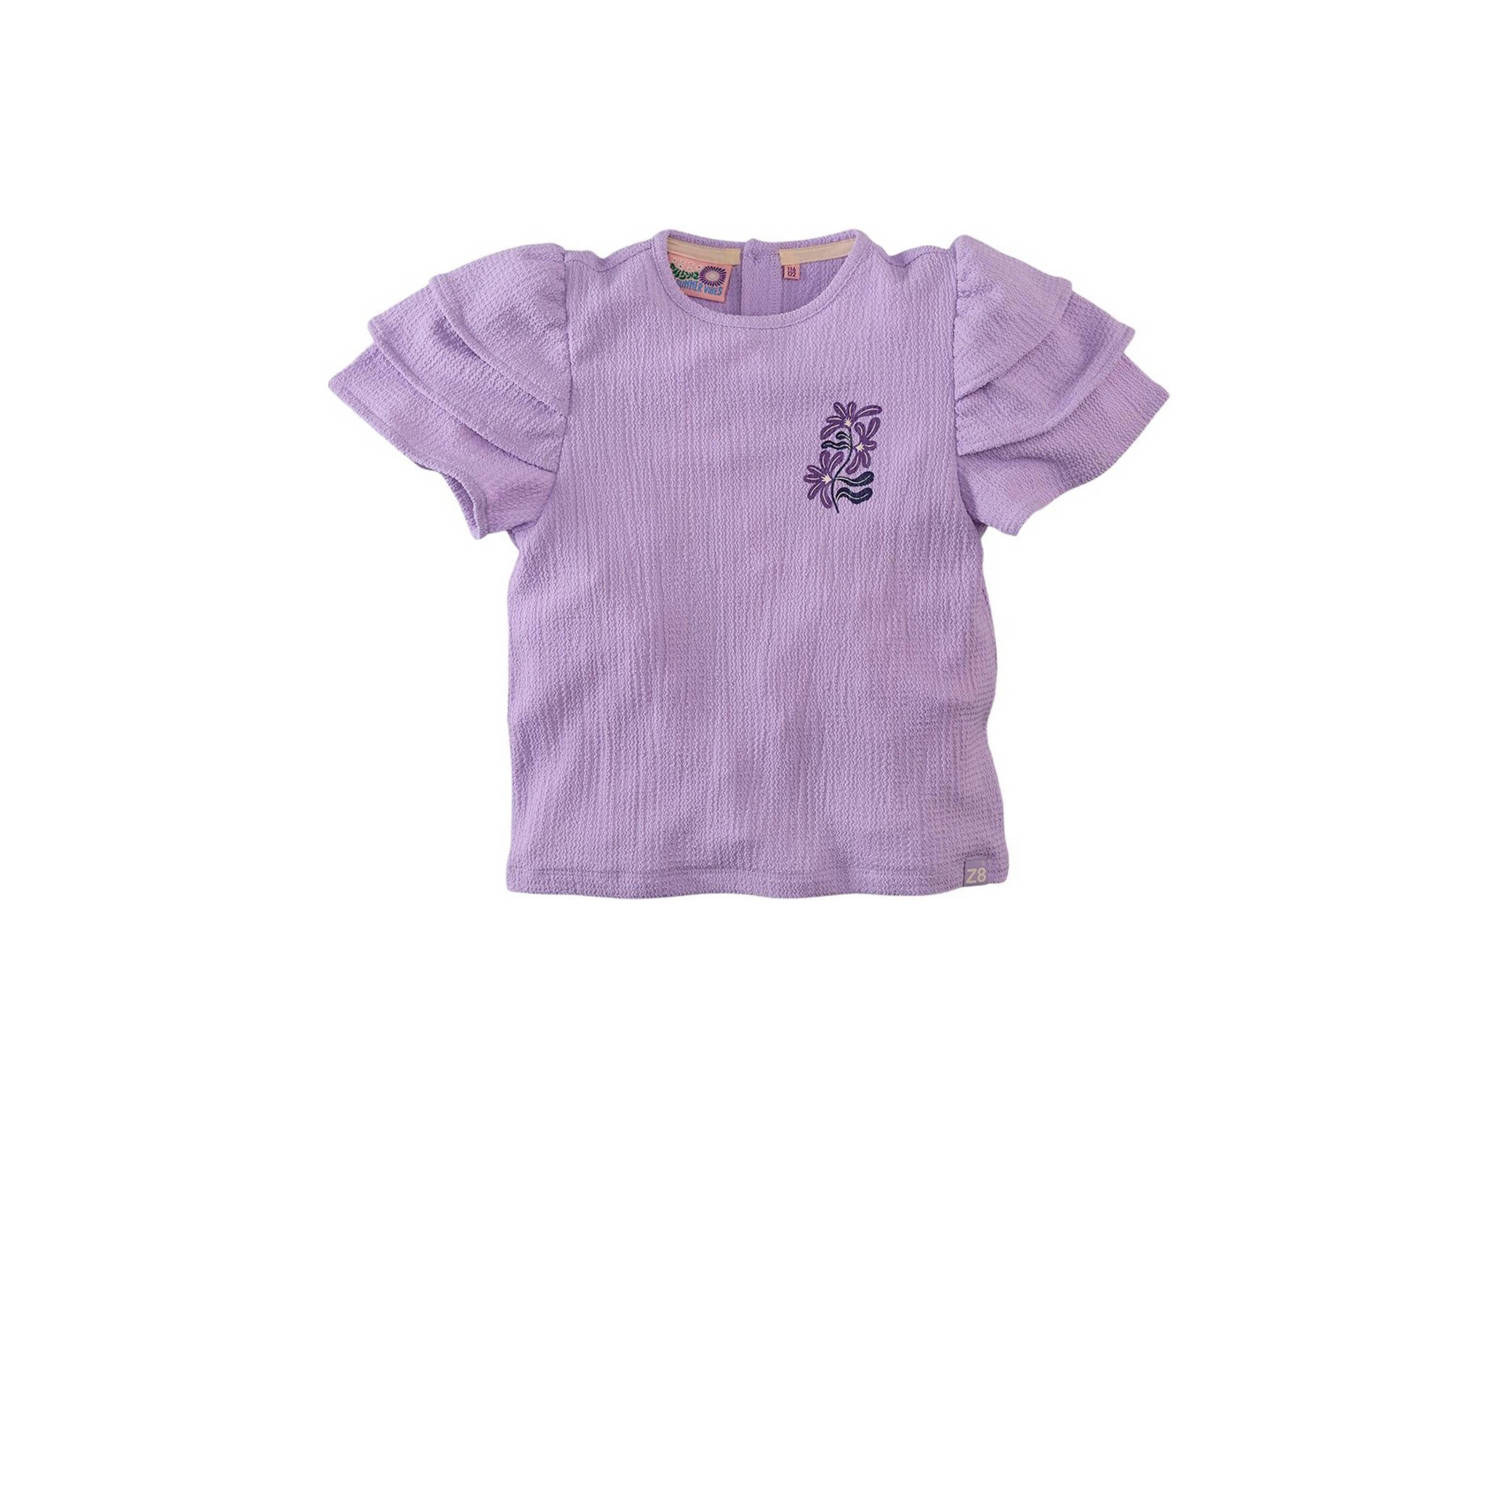 Z8 Meisjes Tops & T-shirts Celyse Lila